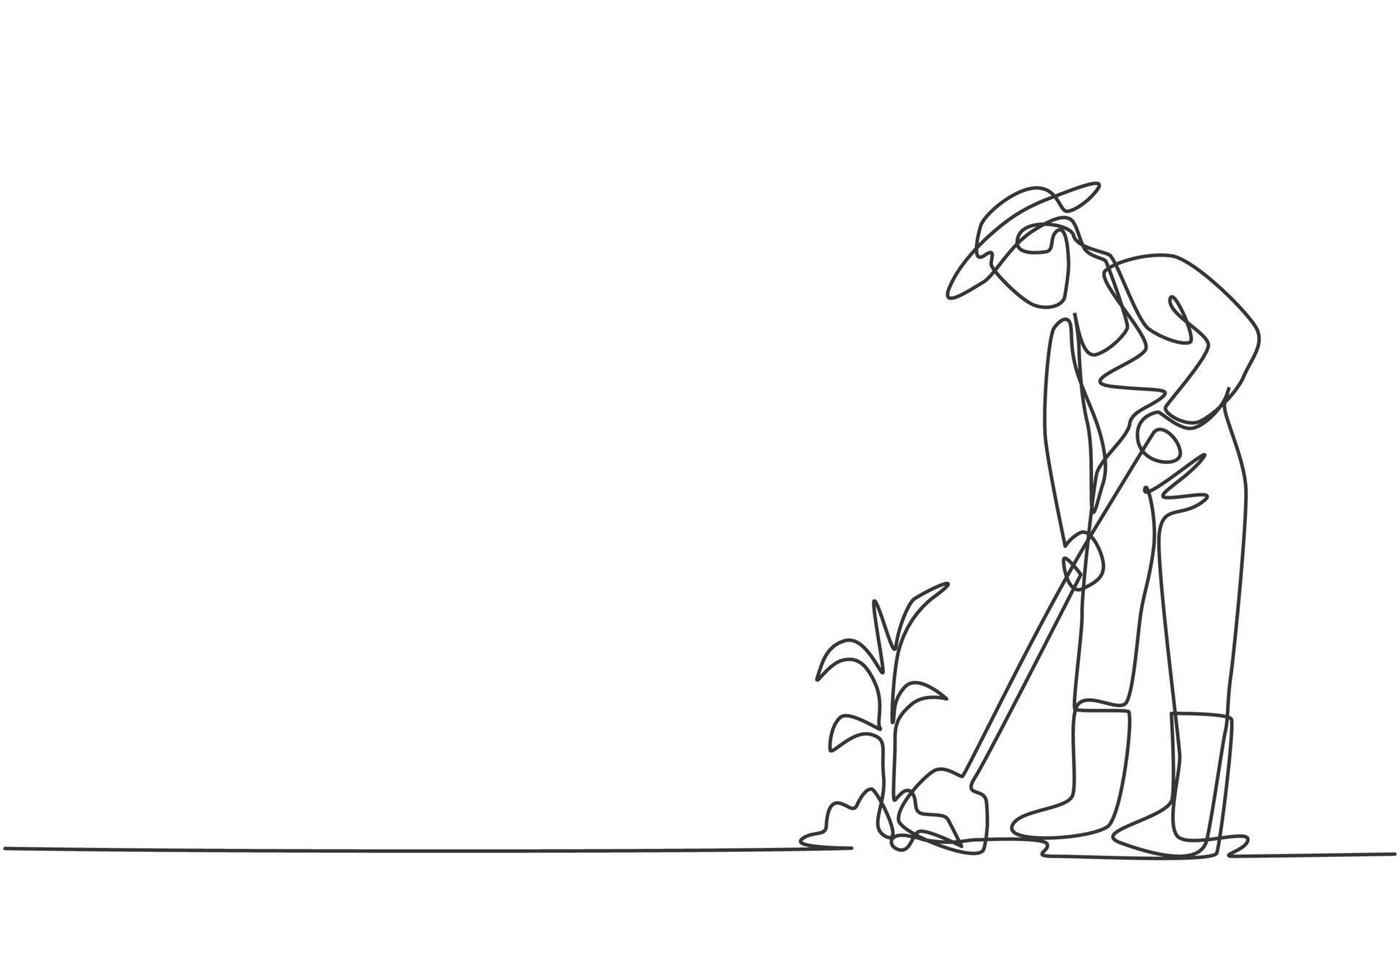 enda kontinuerlig linjeteckning ung kvinnlig bonde skottade jorden med plantorna med en spade. jordbruk utmaning minimalistiska koncept. dynamisk en linje rita grafisk design vektor illustration.